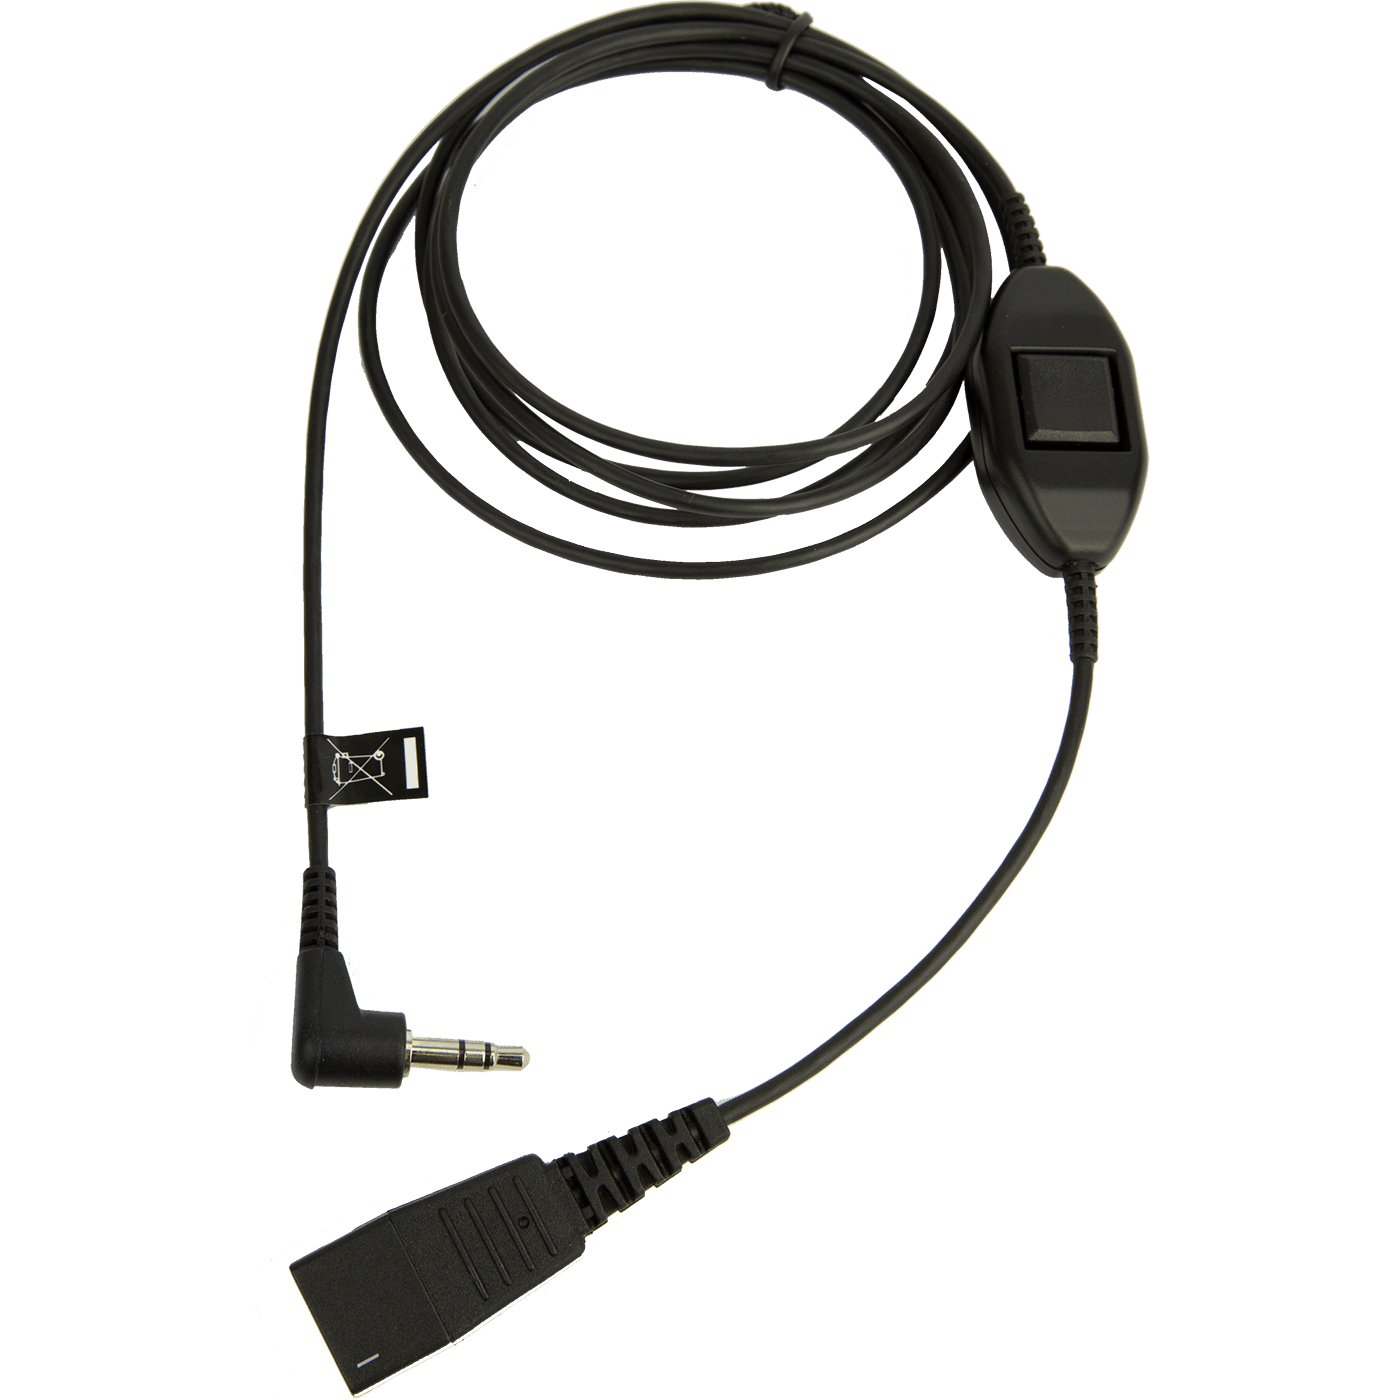 Jabra Headset-Kabel - Quick Disconnect männlich zu mini-phone stereo 3.5 mm männlich